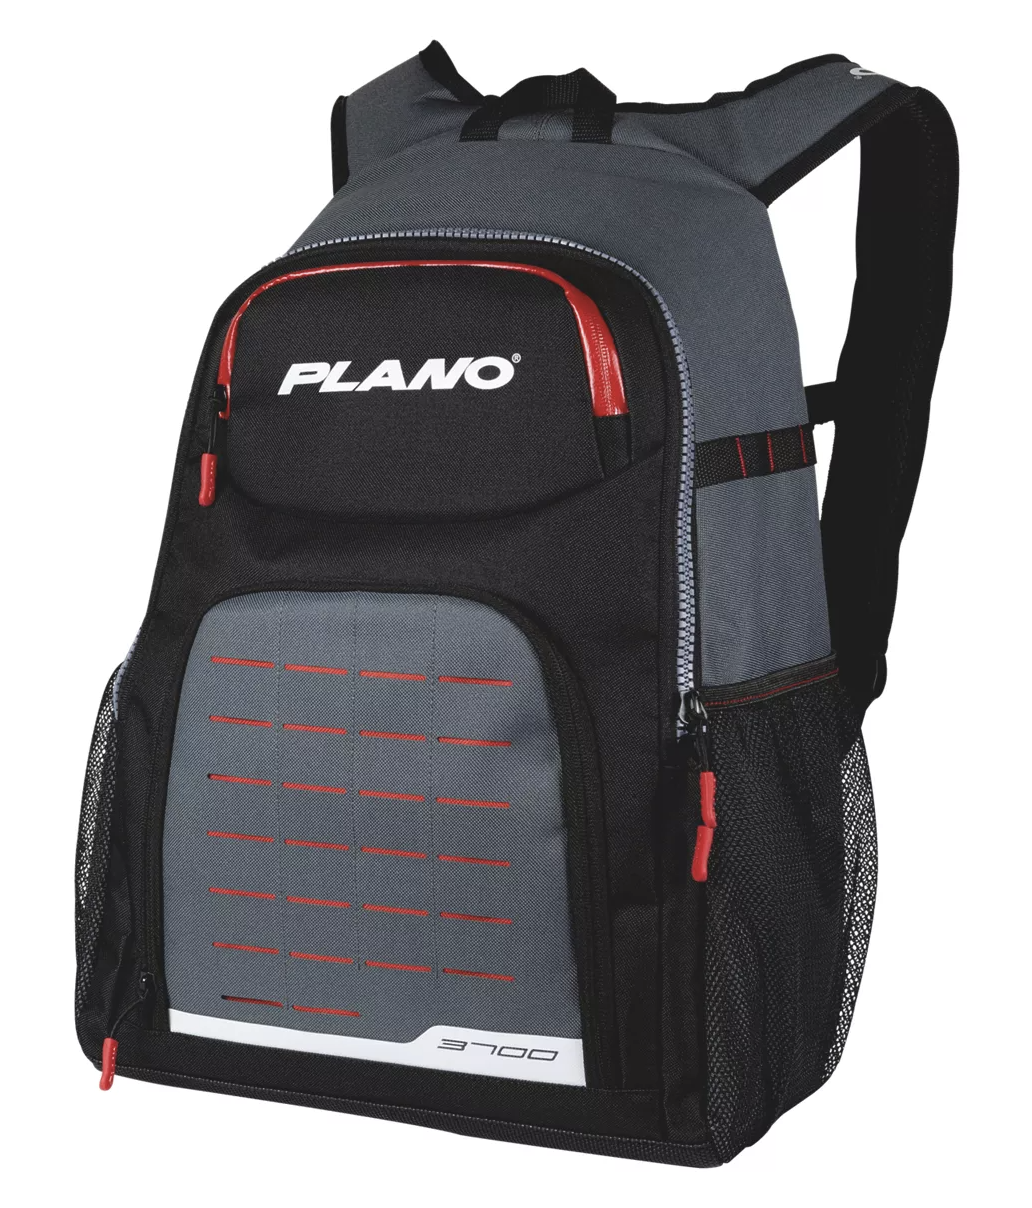 Plano Weekend Series 3600 Tackle Bag